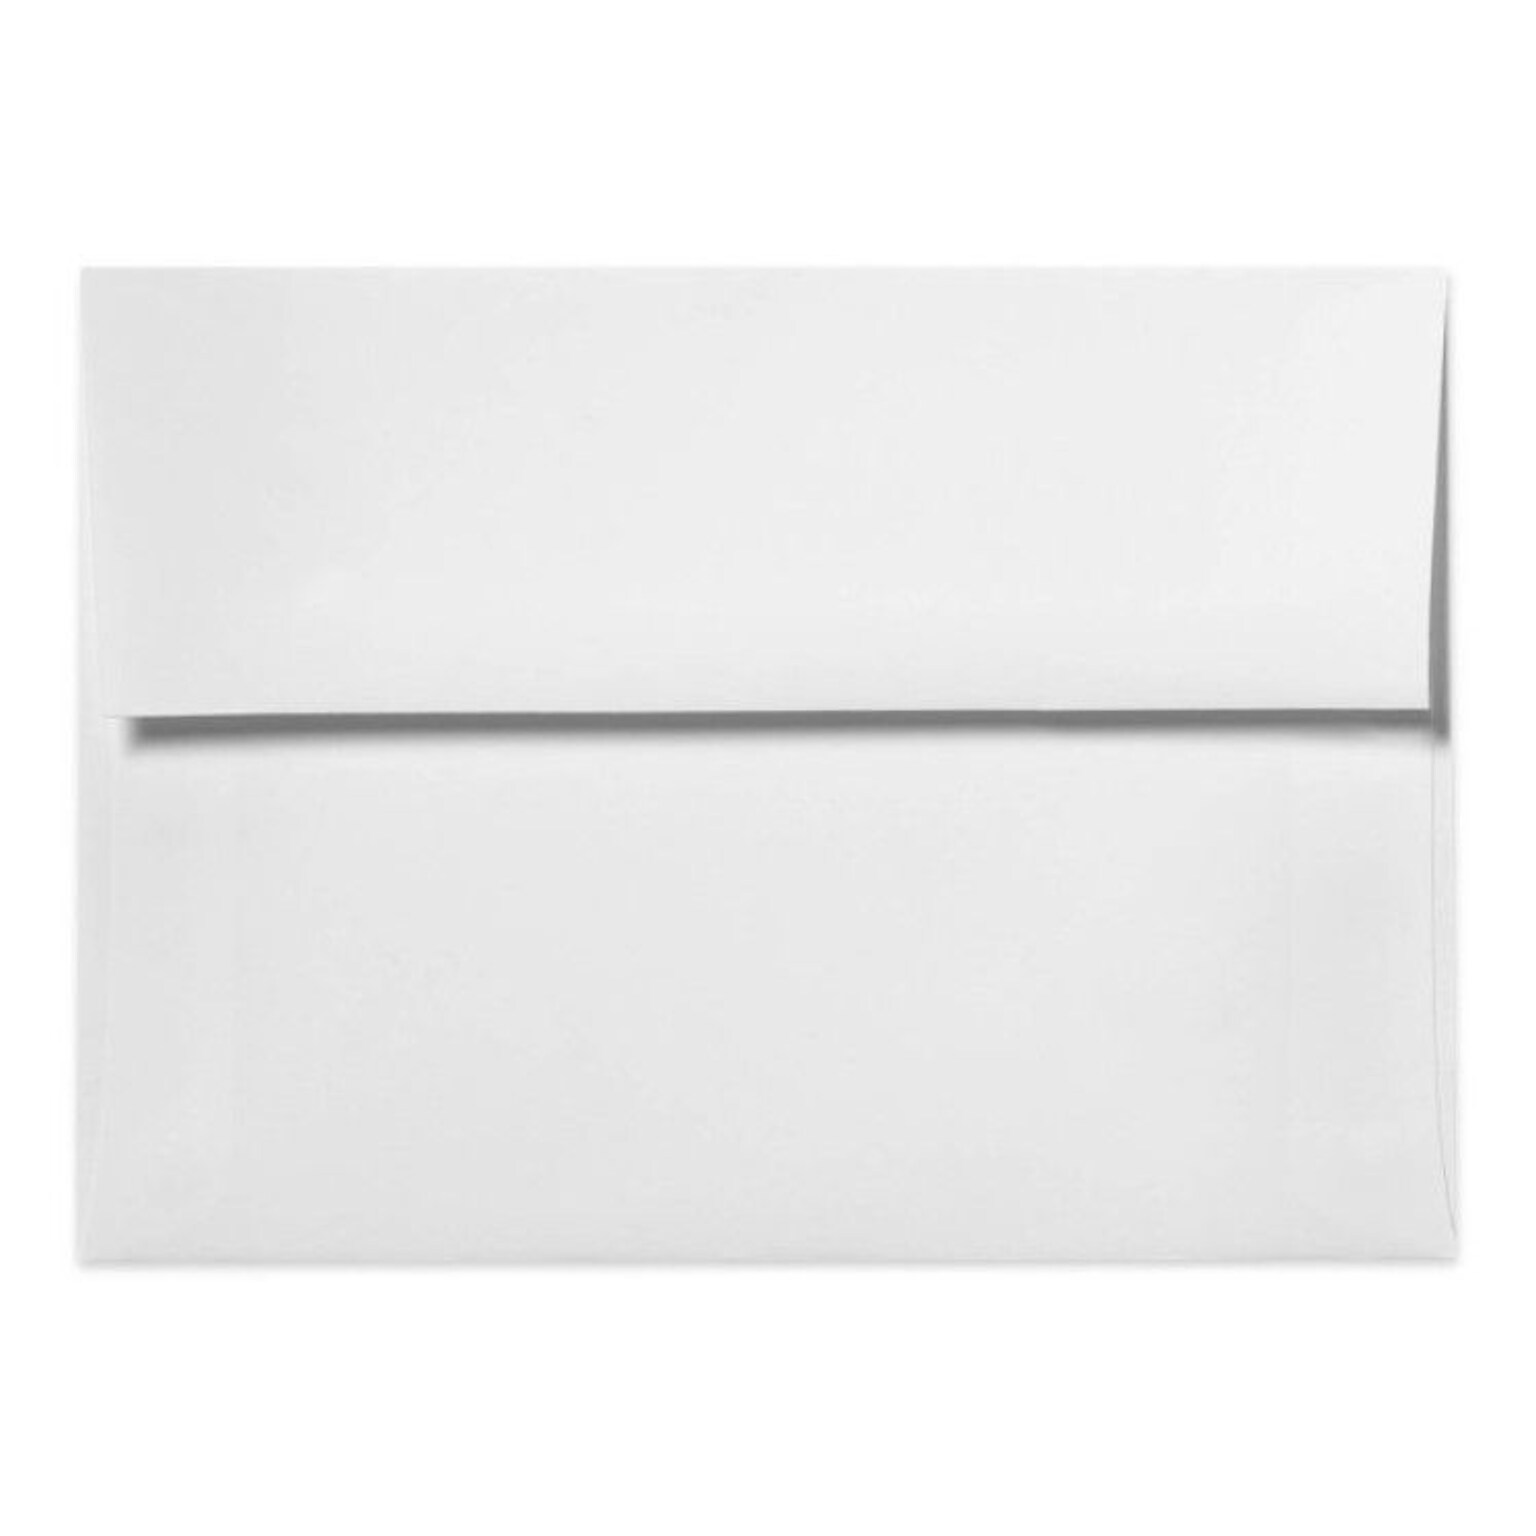 LUX A2 (4 3/8 x 5 3/4) 500/Box, 70lb. Bright White (20446-500)